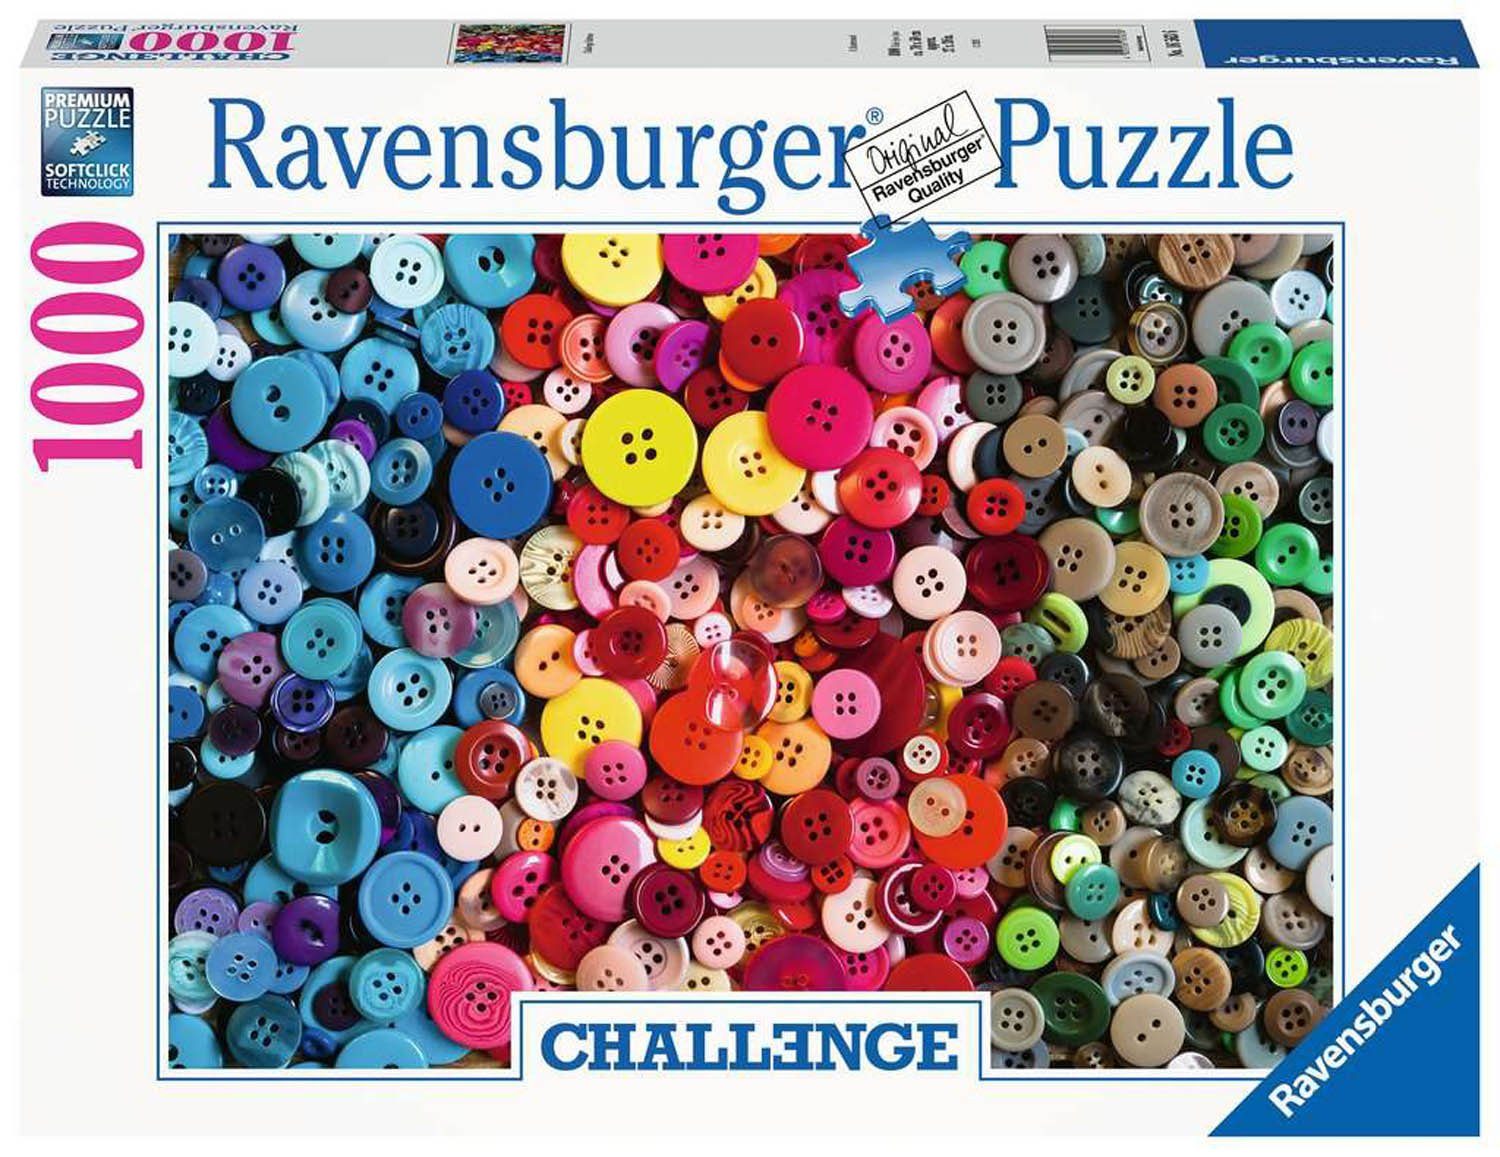 Ravensburger Puzzle Ravensburger Buttons, 16563 - Puzzleteile Challenge